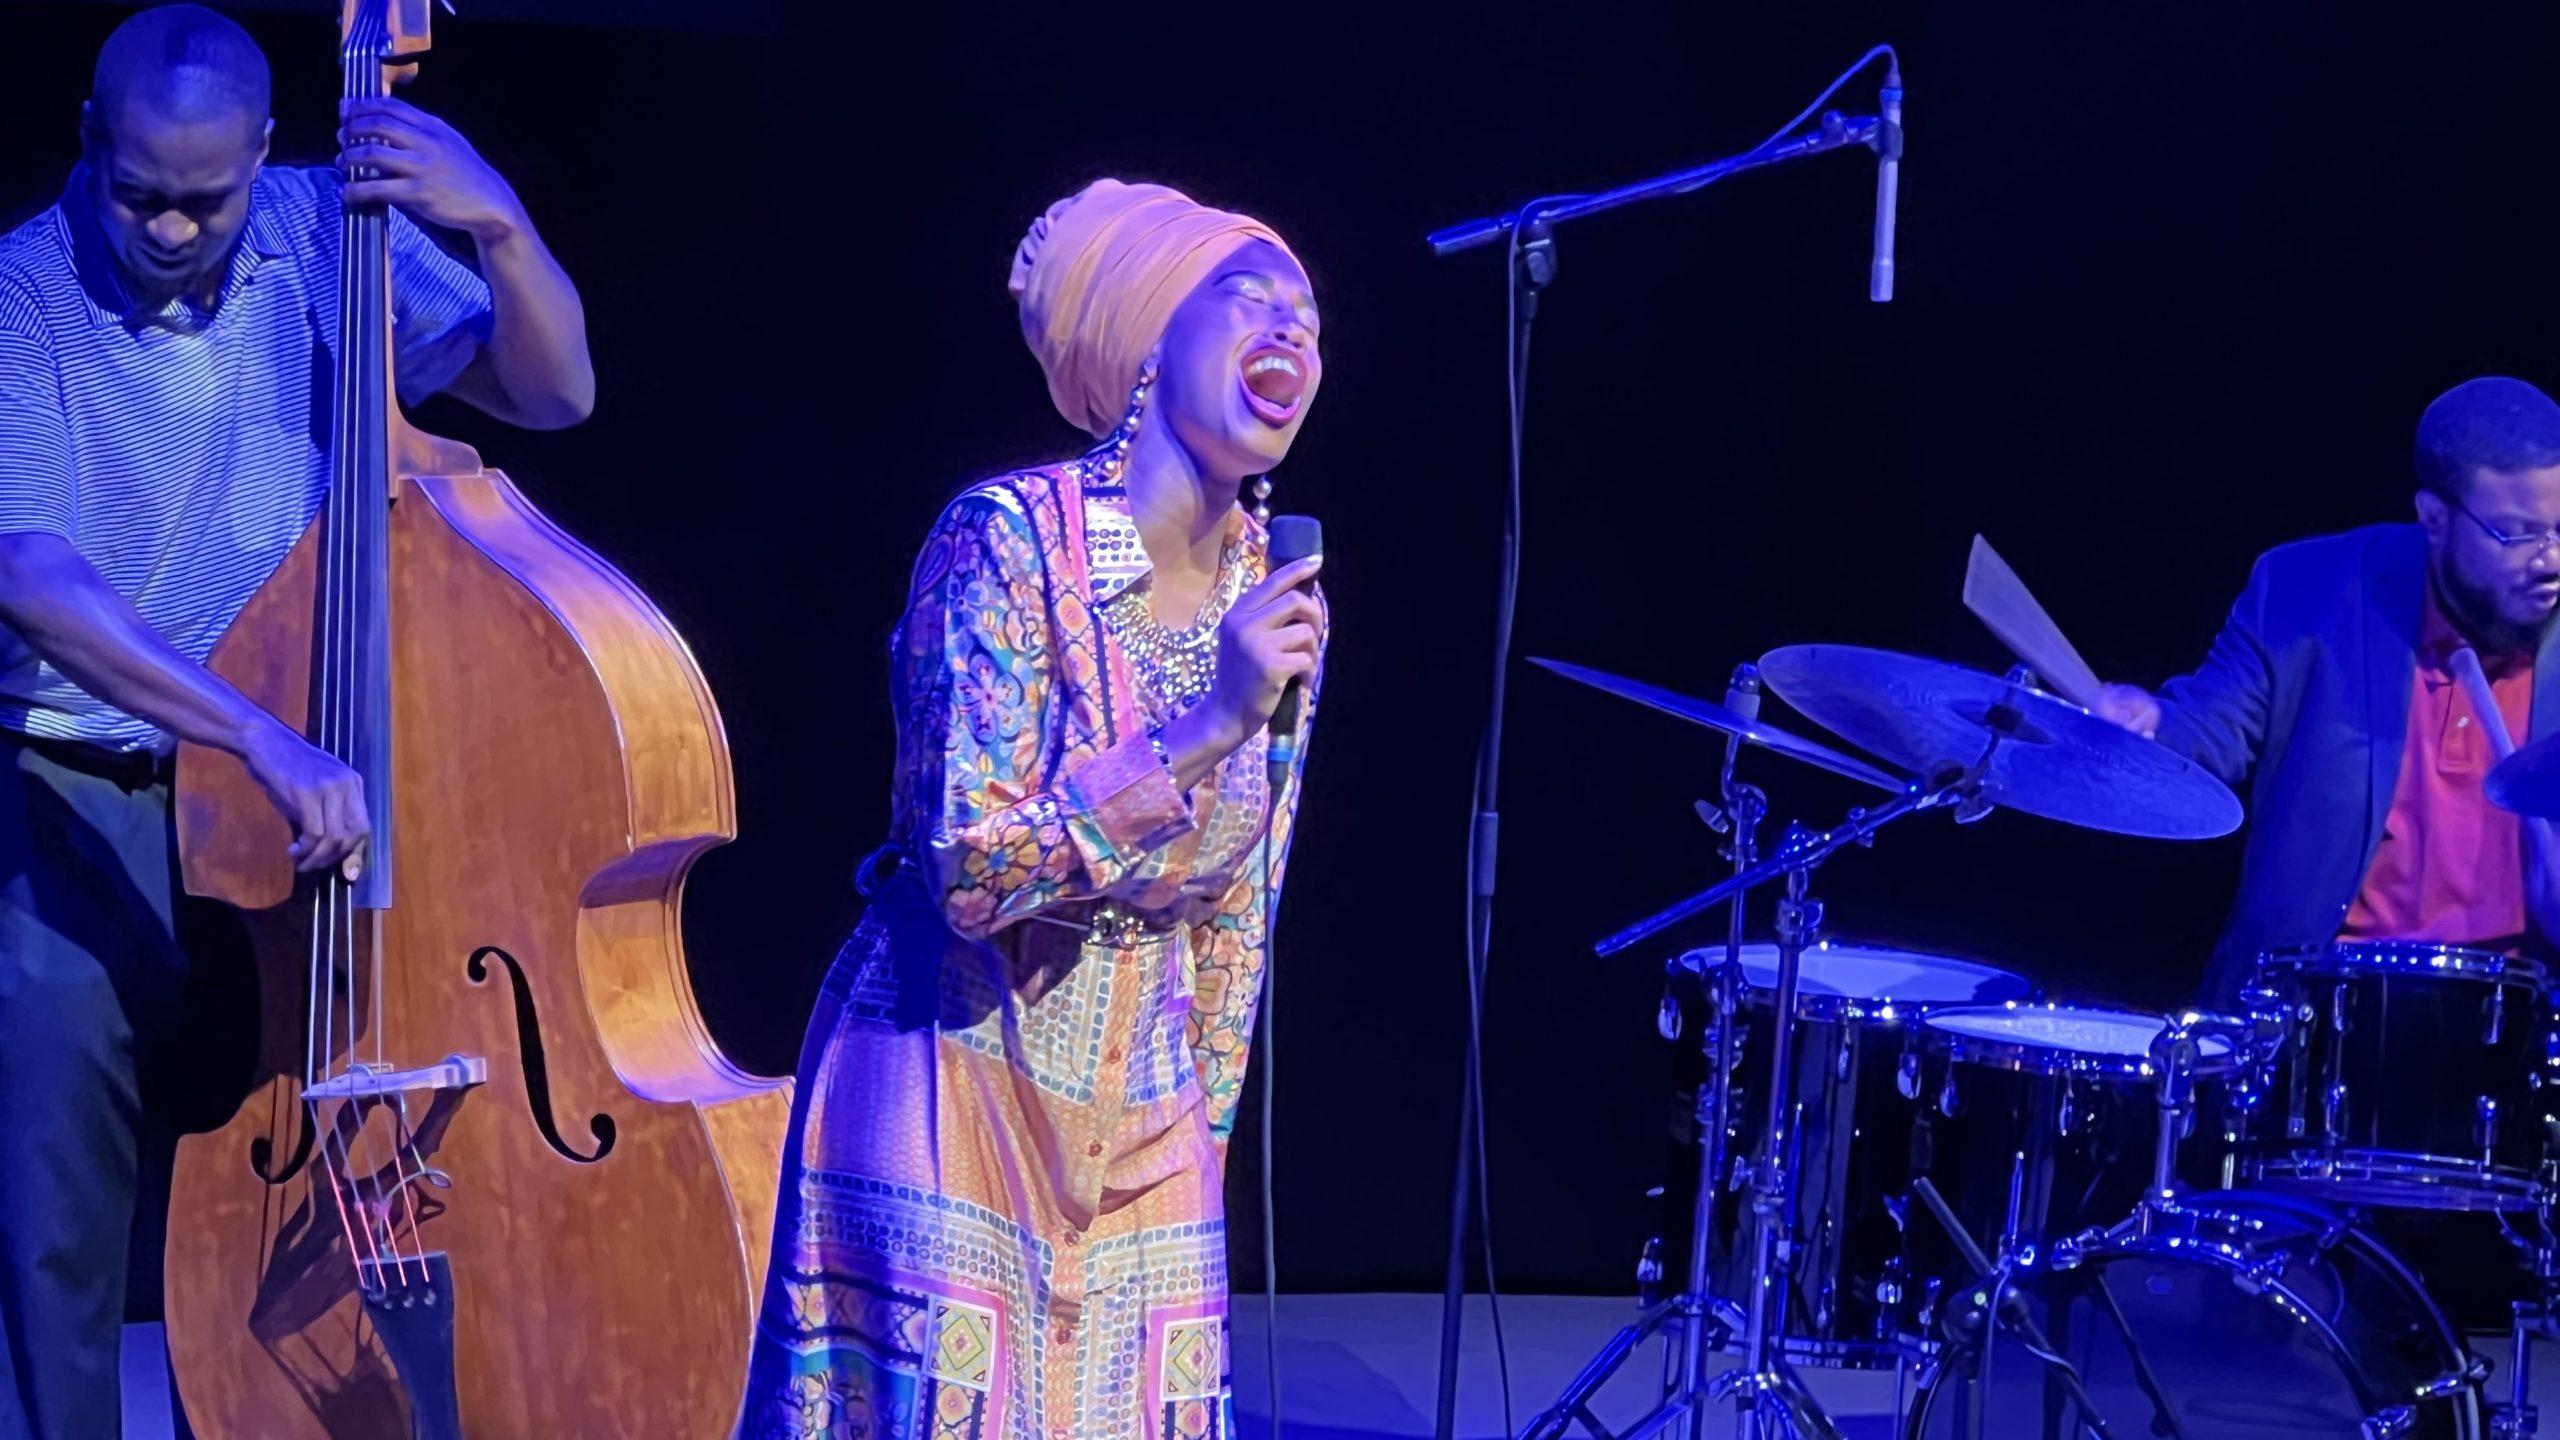 Jazzsängerin Jazzmeia Horn in buntem Kleid und Turban singt sehr emotional ein Lied.